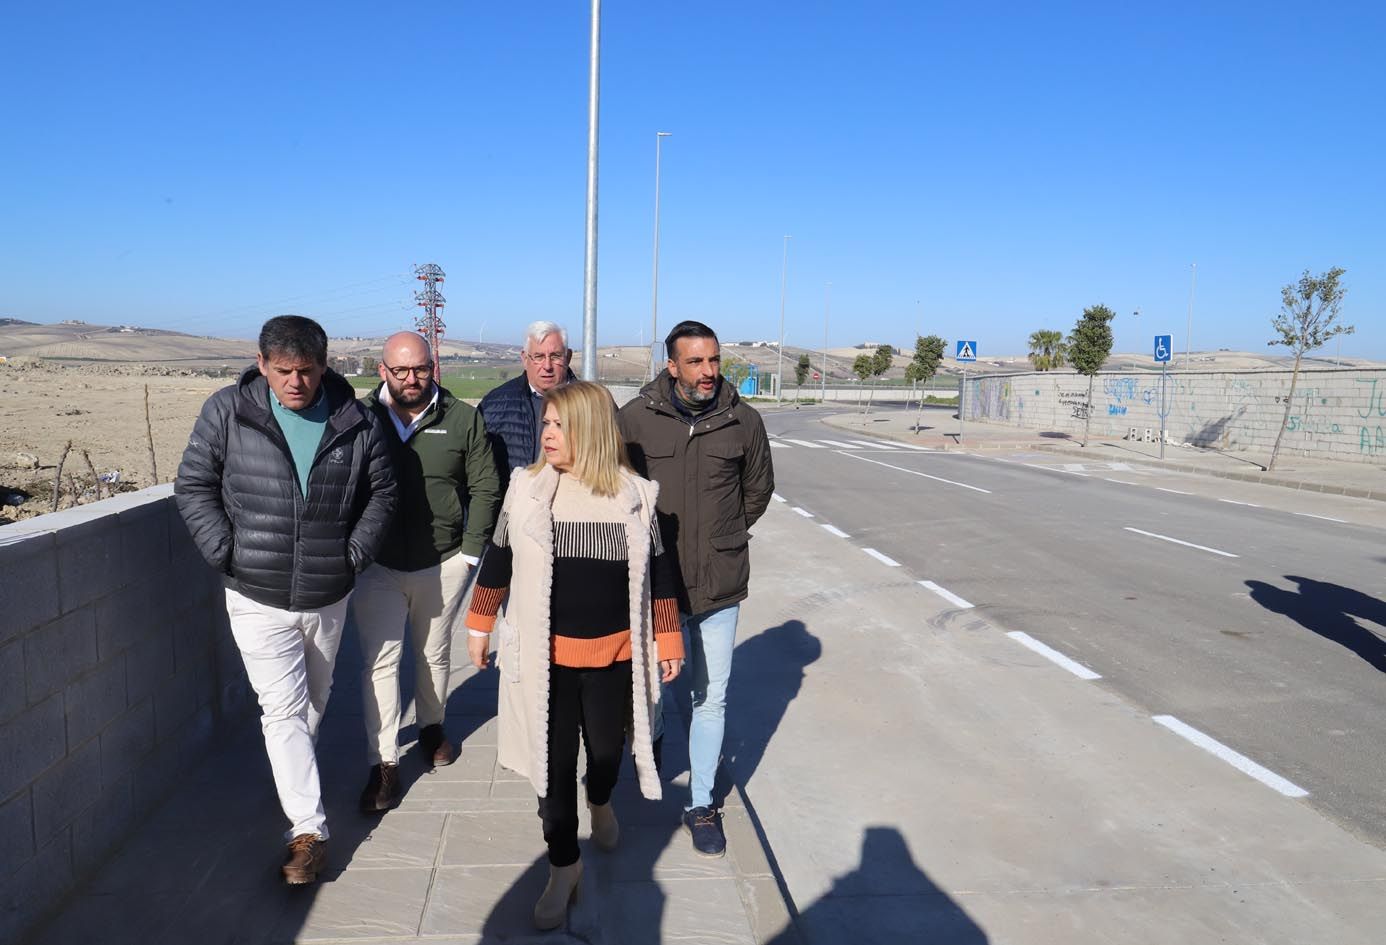 La alcaldesa visita las obras de reurbanización, ya finalizadas, del entorno donde se encontraba el Palacio de Congresos 'fantasma', que ahora da paso a nuevos proyectos empresariales para Jerez.